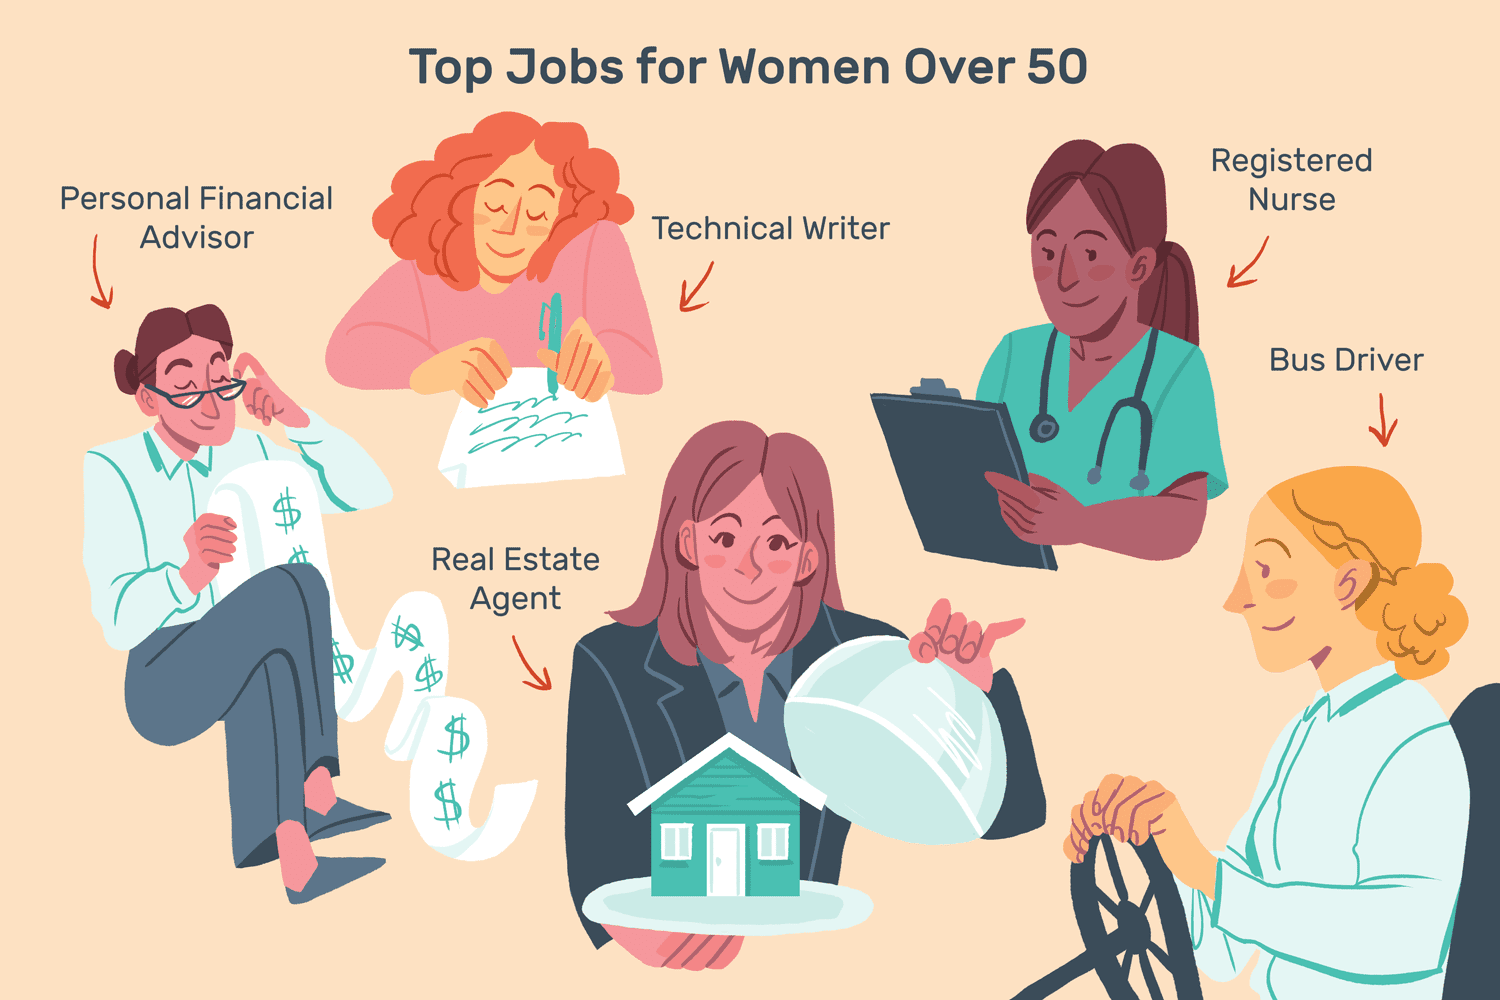 图像显示五个妇女工作以下角色:个人财务顾问,技术作家;房地产经纪人;注册护士;巴士司机。文字写着:“50岁以上女性的最高职位””class=